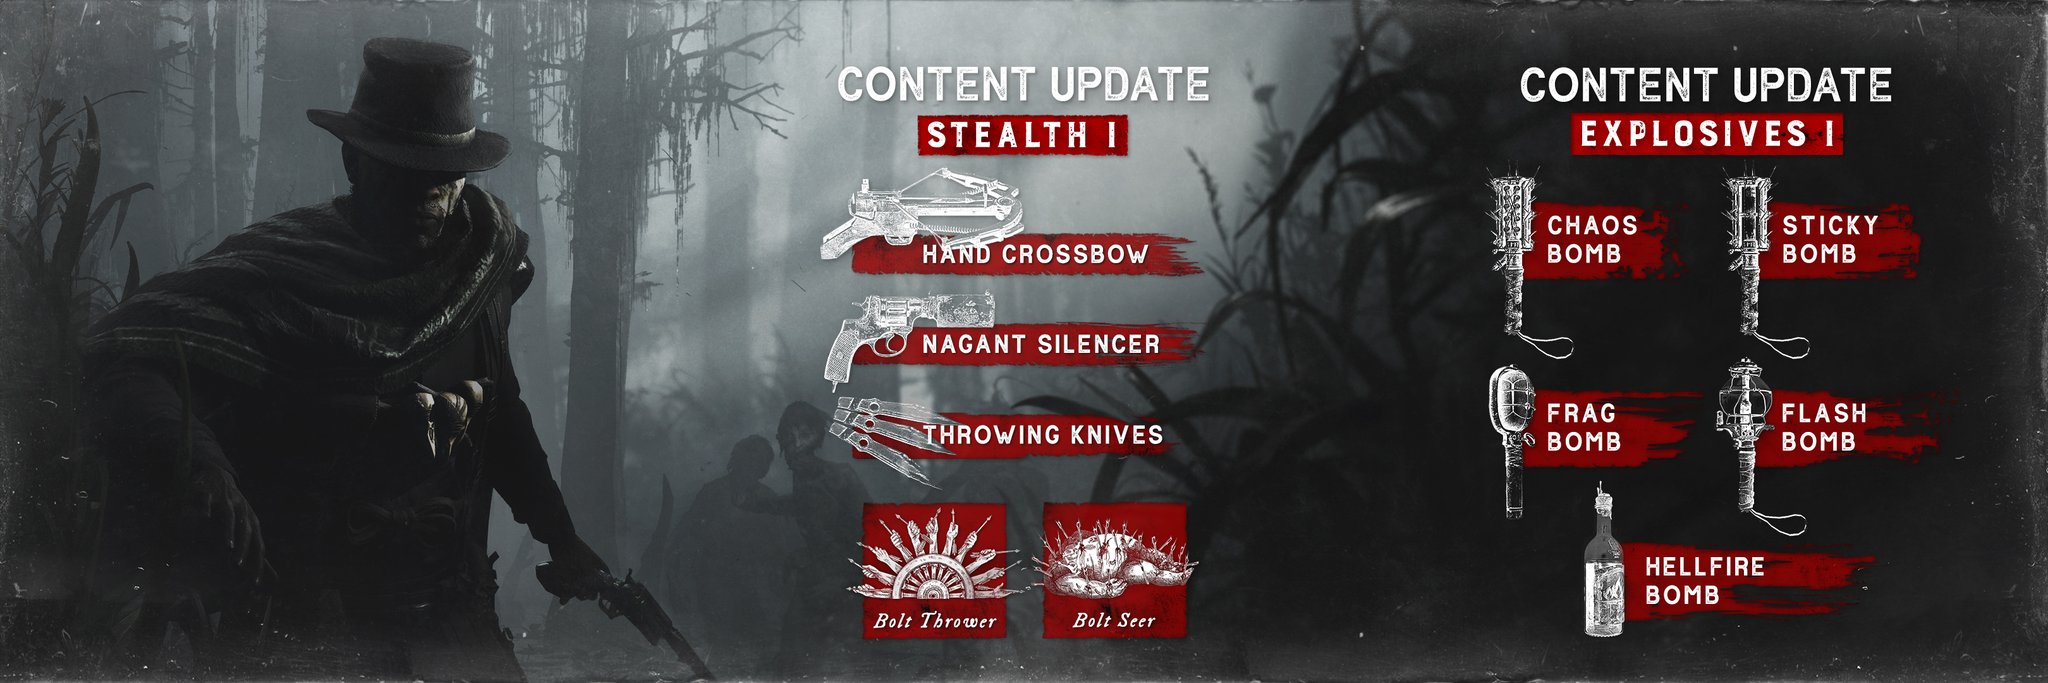 На XBOX доступны два контентных обновления игры Hunt: Showdown